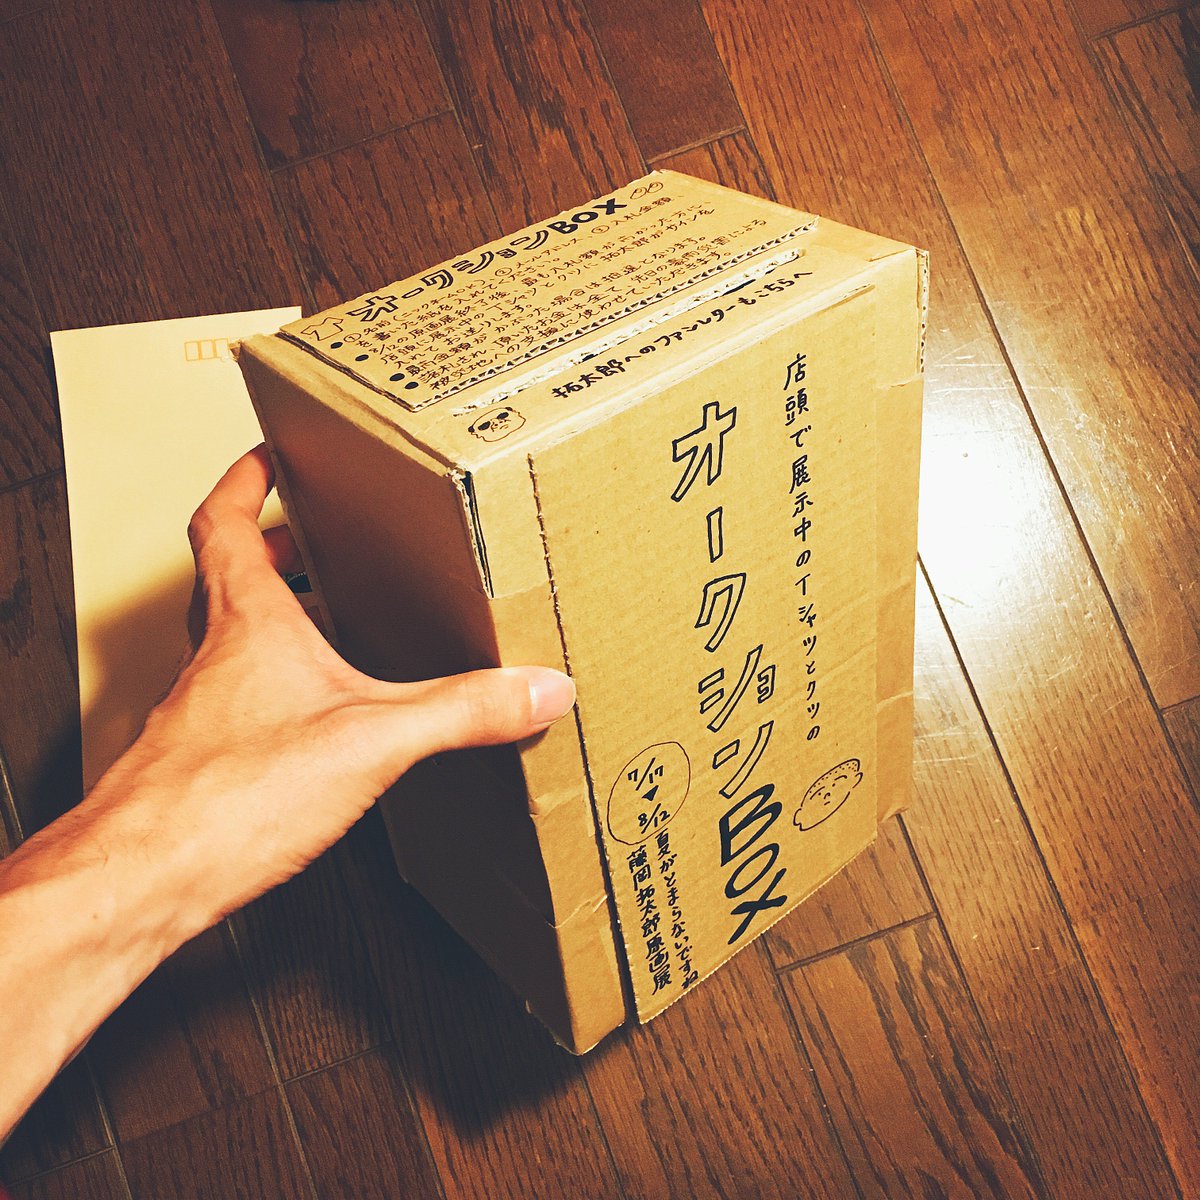 #藤岡拓太郎原画展 にて、8/1より「オークションBOX」を設置します。詳しくは写真1枚目を見てください。要するにTシャツとクツのオークションです。この箱はファンレターBOXも兼ねてるので、お手紙を書いて入れて頂けると、とても喜び… 